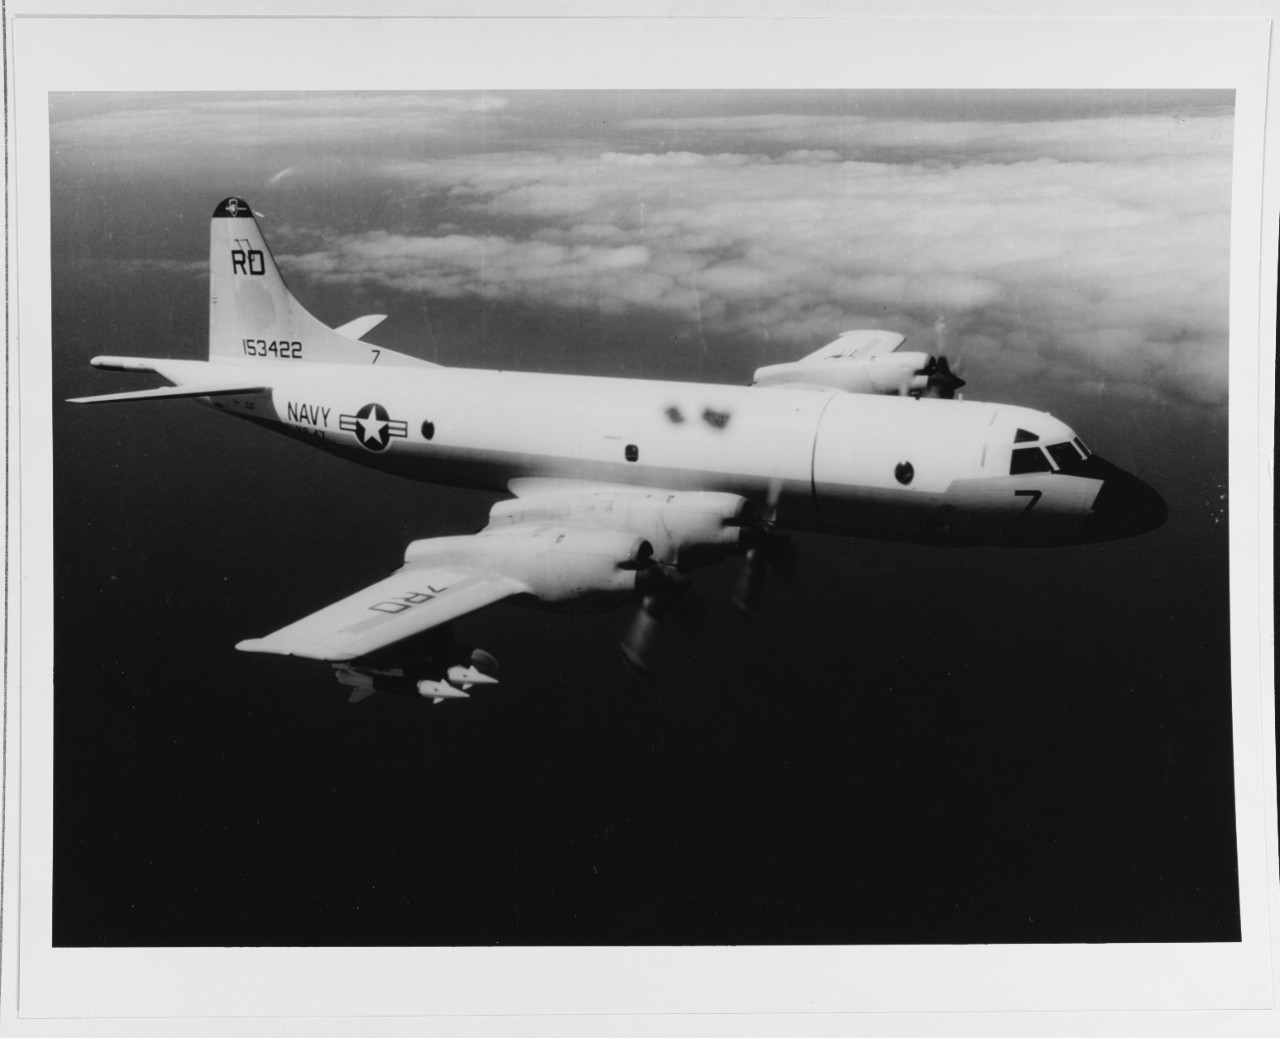 A P-3 "Orion" Patrol Plane